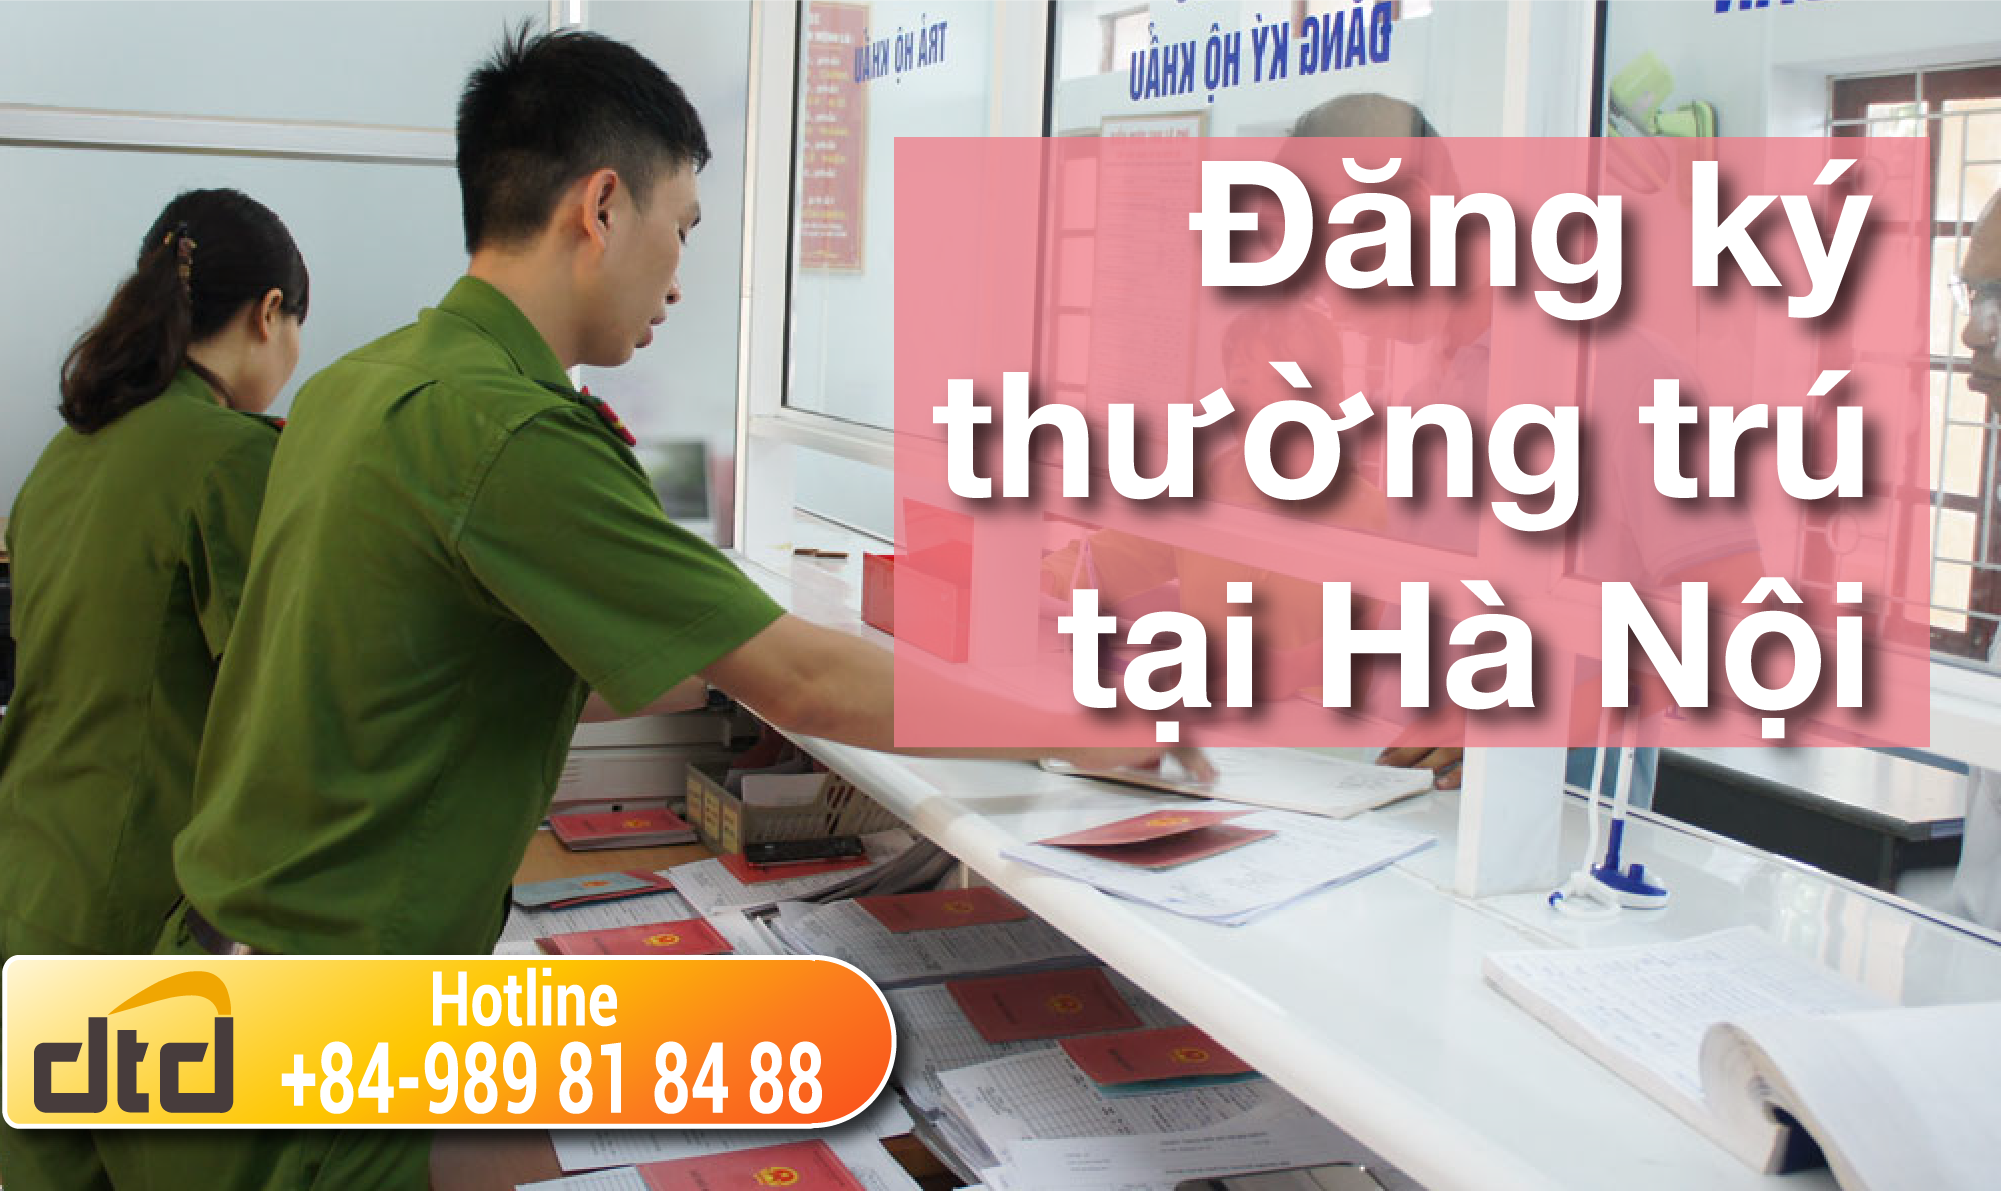 Đăng ký thường trú tại Hà Nội